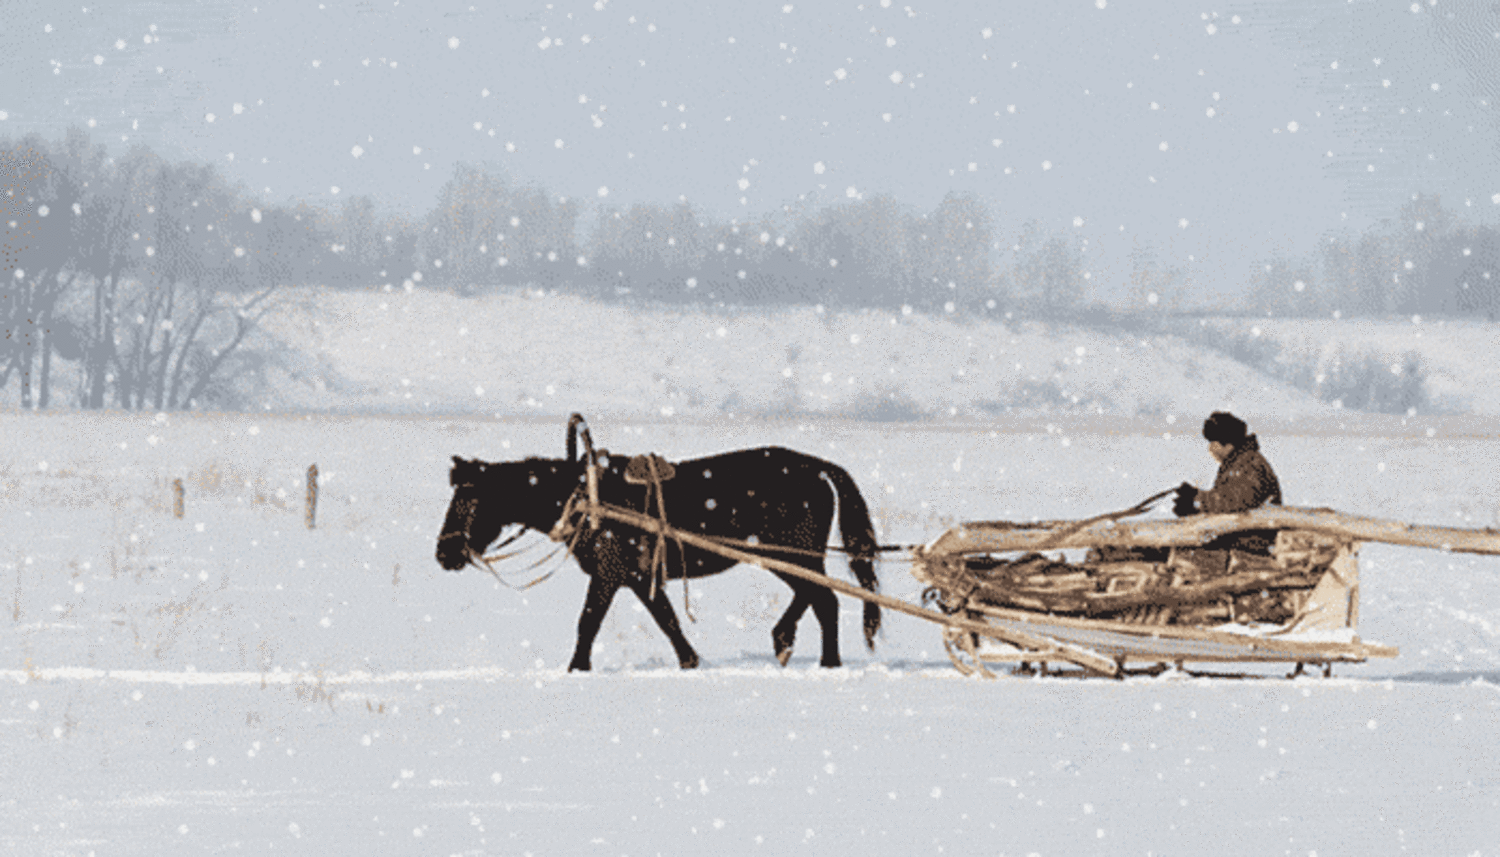 Невдалеке стояла телега. Лошадь с санями зимой. Повозка с лошадью зимой. Крестьянин на санях. Дровни крестьянские сани.